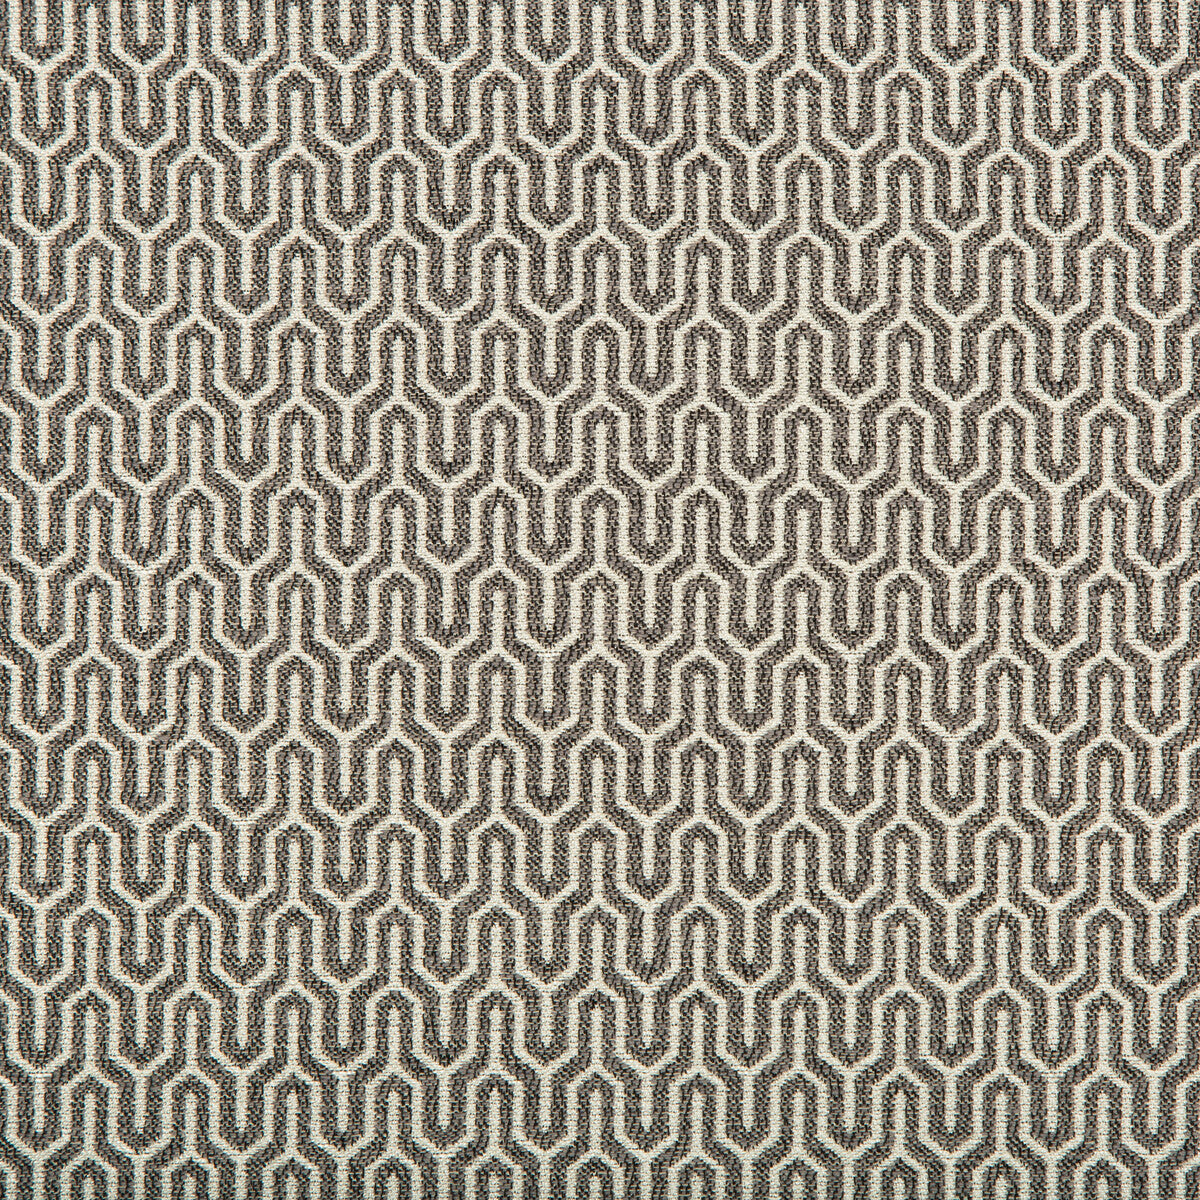 Kravet Design fabric in 35637-11 color - pattern 35637.11.0 - by Kravet Design